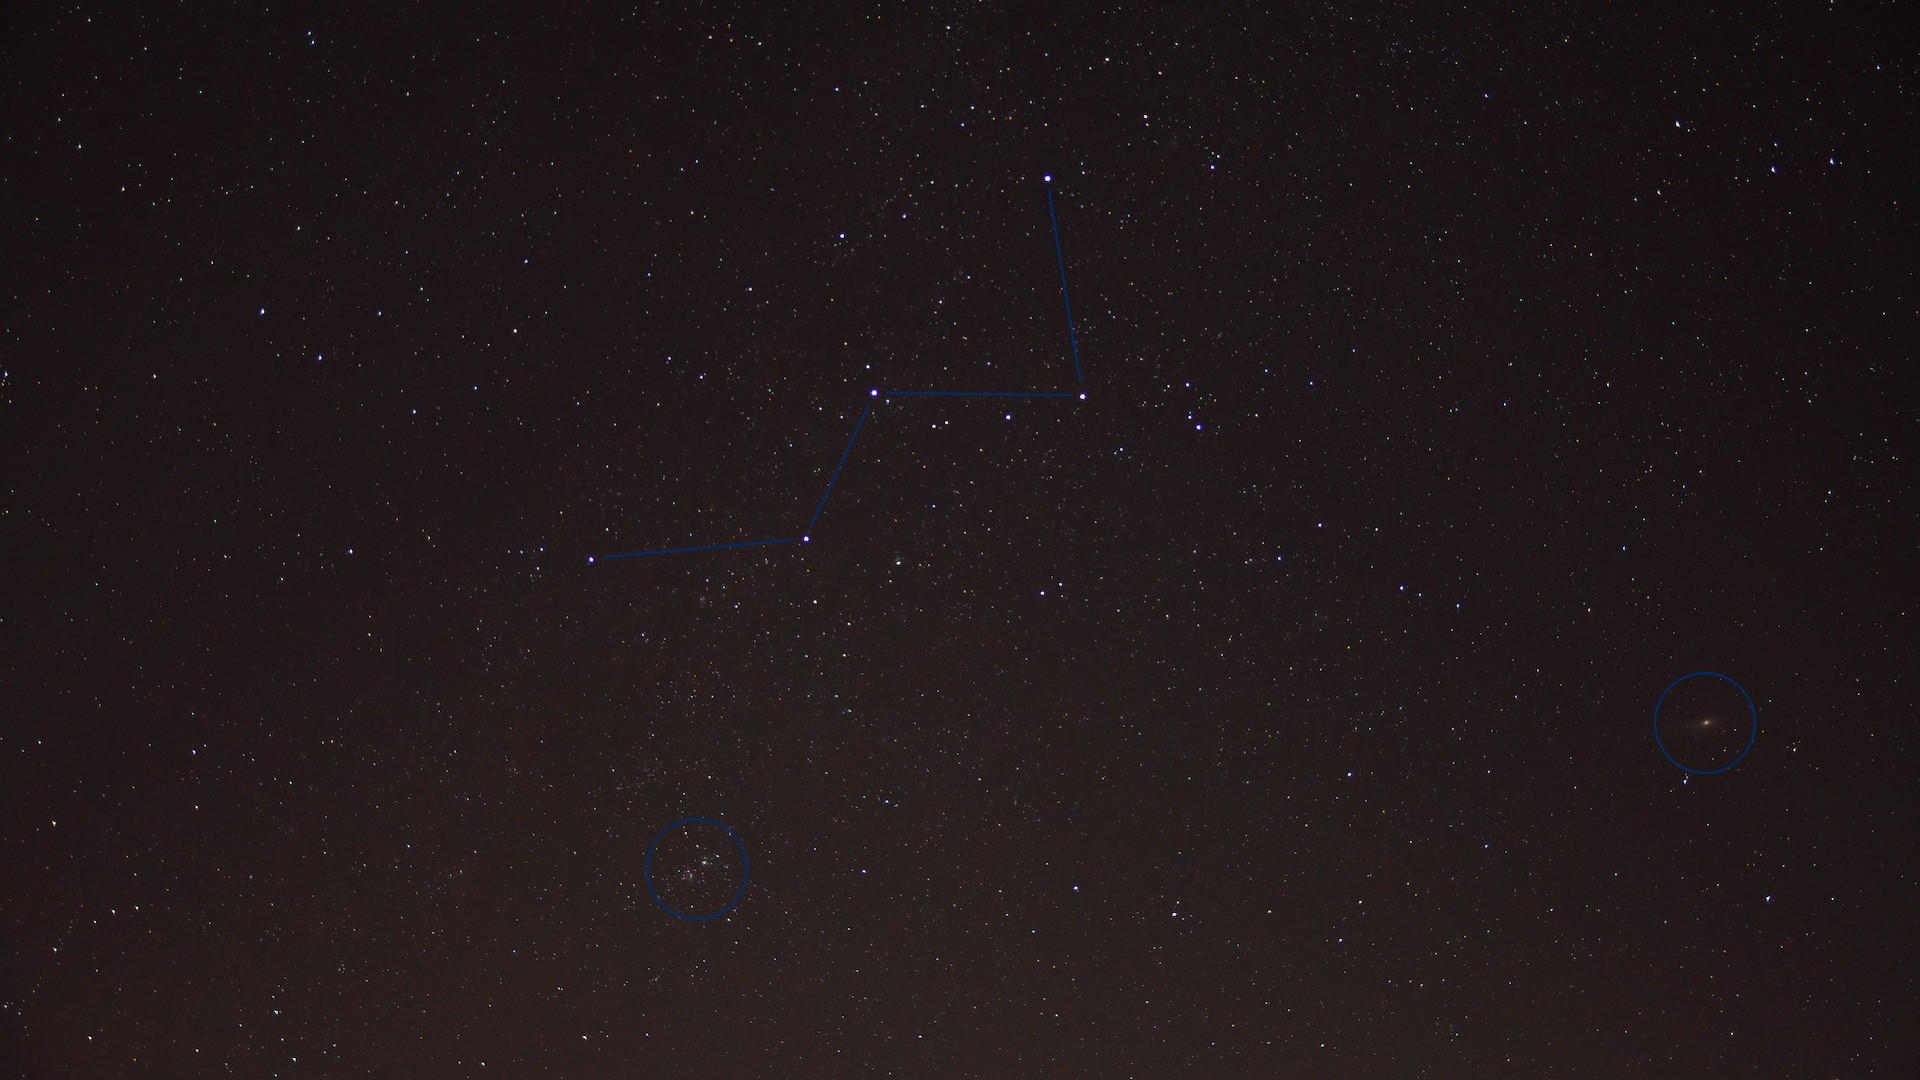 Das Sternbild Kassiopeia. Unbearbeitete Einzelaufnahme mit 30 Sekunden Belichtung bei ISO 800. Der Doppelhaufen h & chi, die Andromeda-Galaxie und viele weitere Deep-Sky-Objekte sind sichtbar. Foto: Marcus Schenk